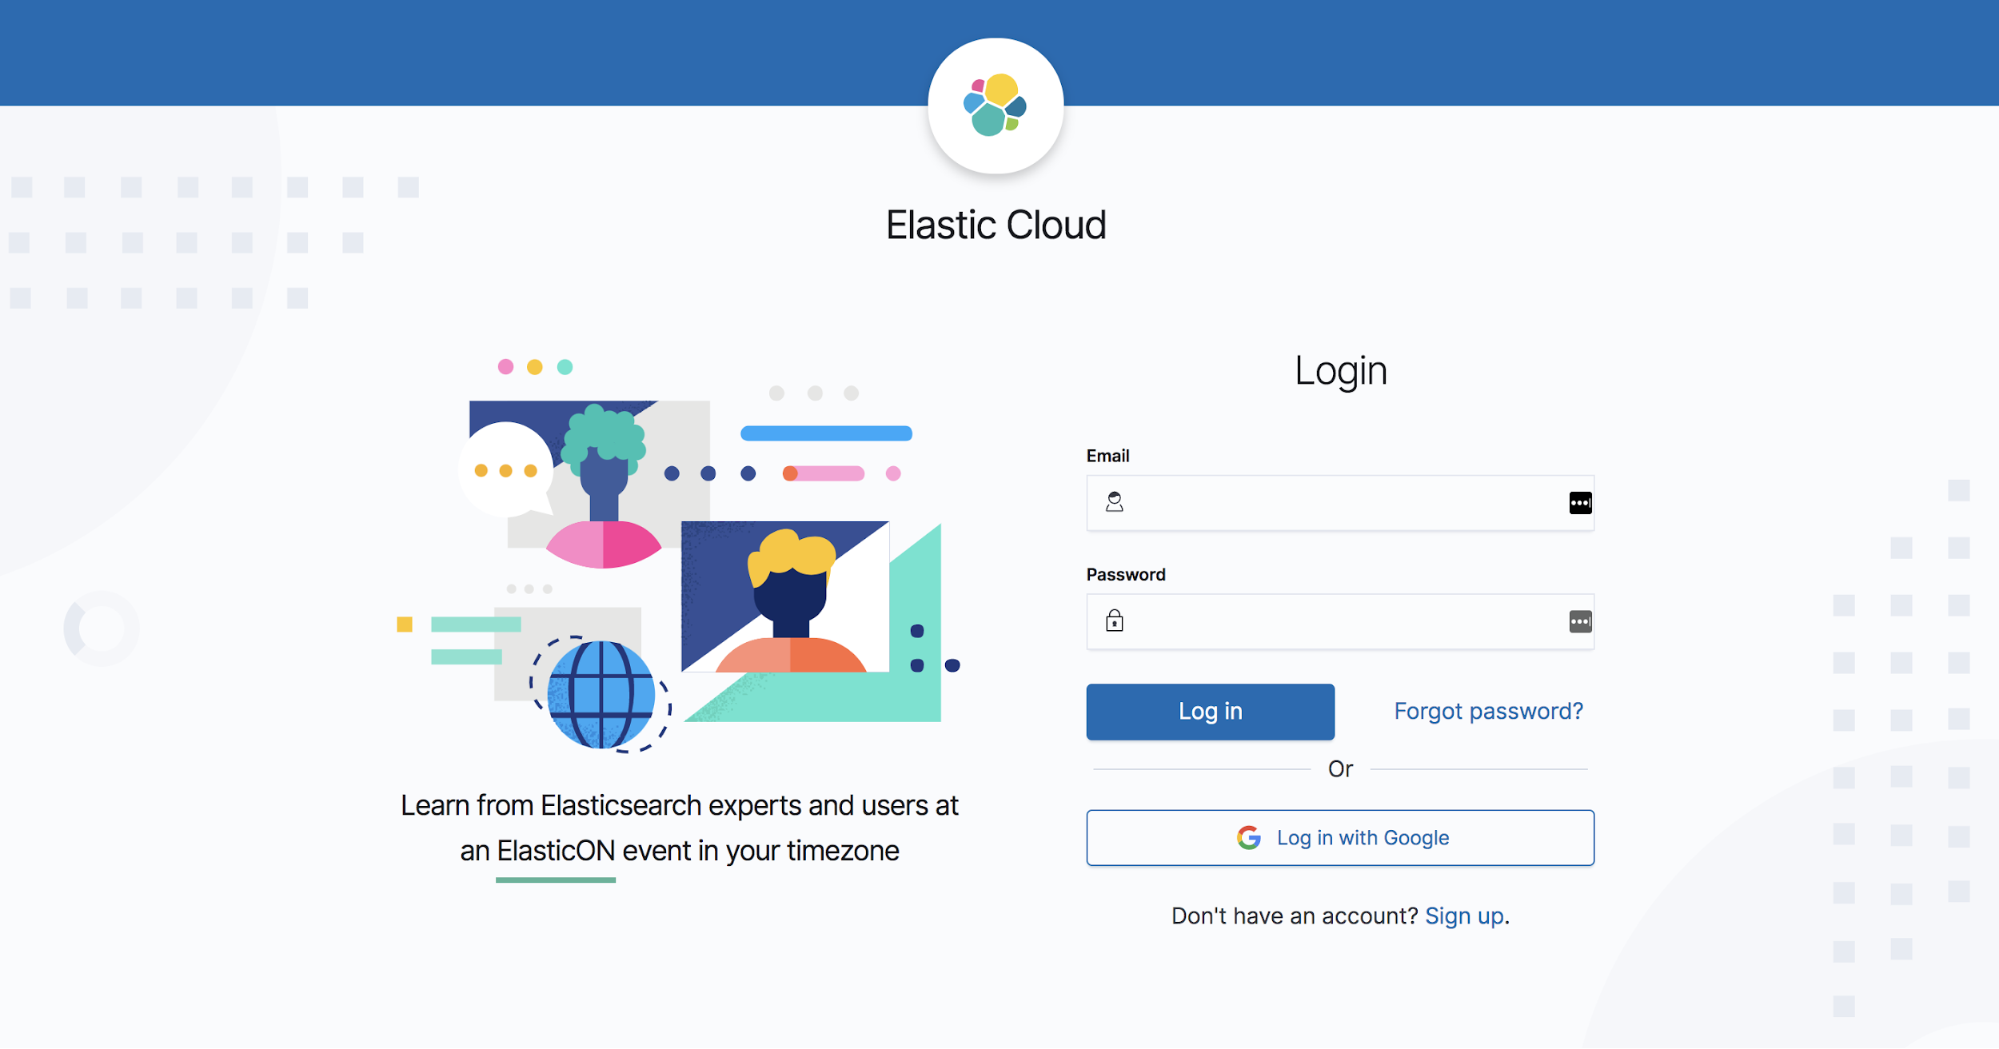 Anmeldebildschirm von Elastic Cloud